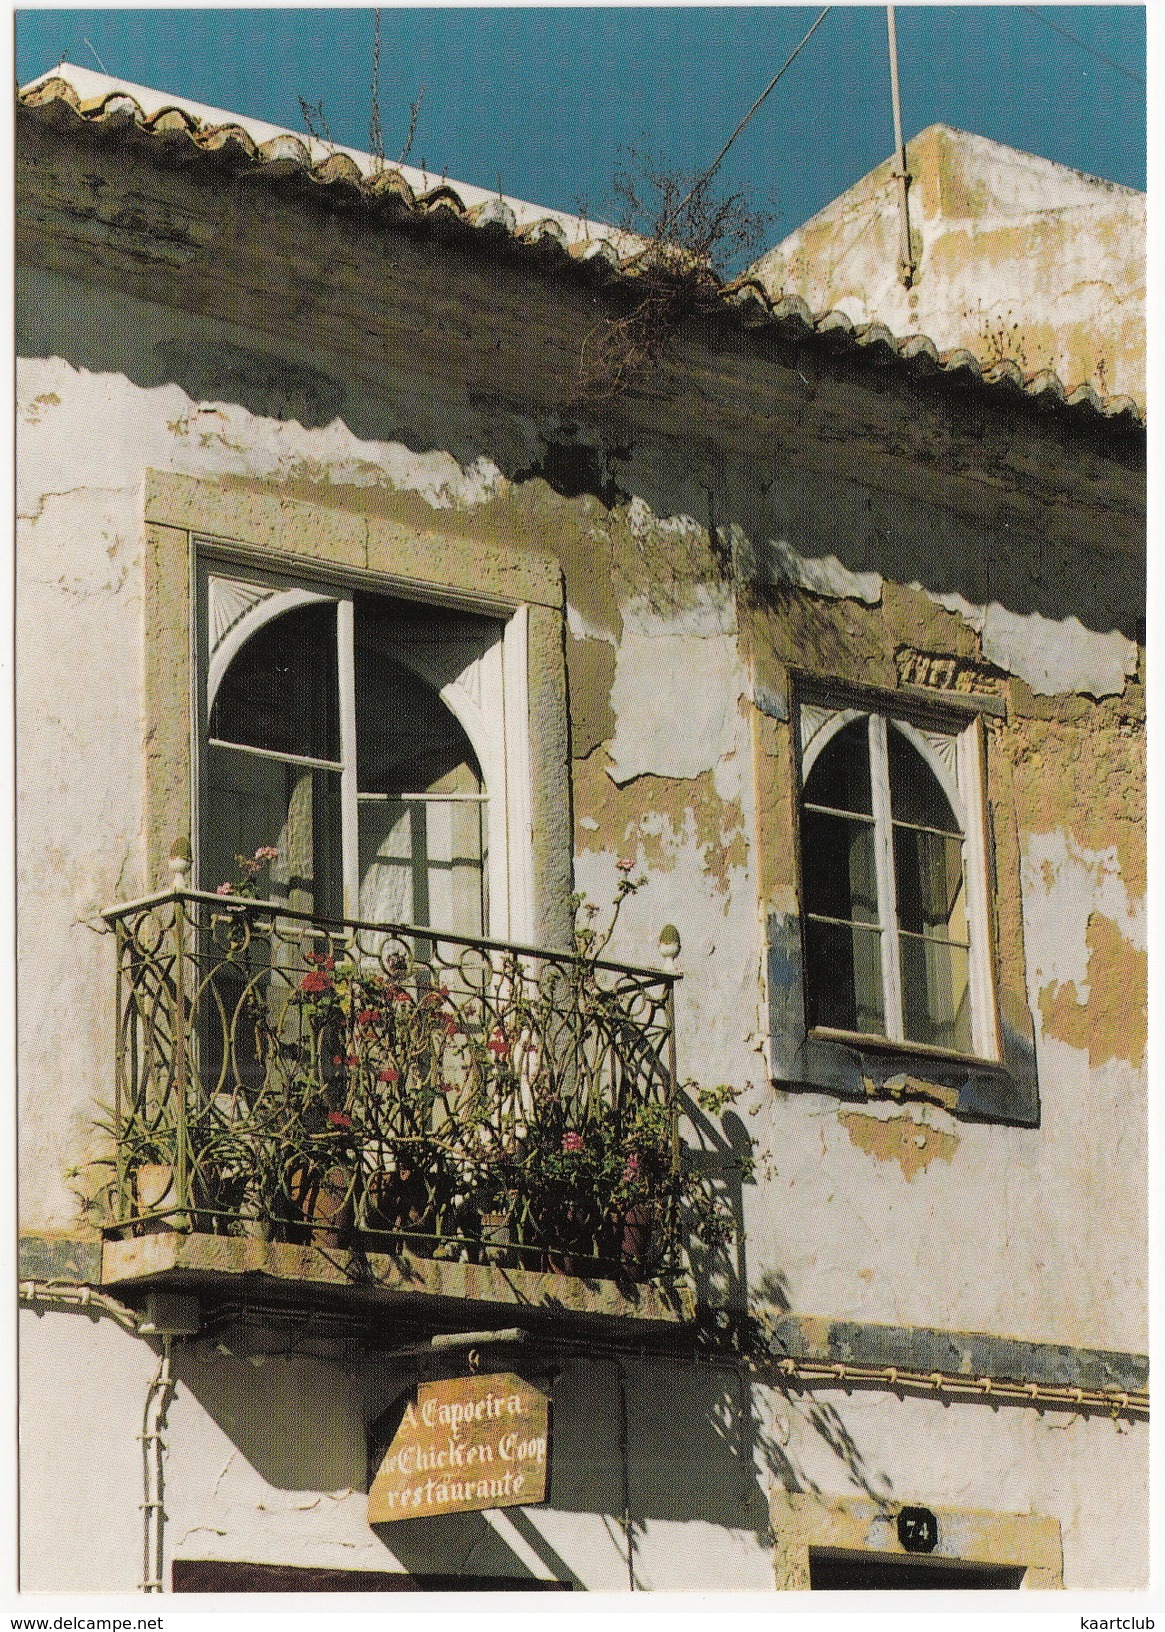 Alvor - 'A Capoeira - The Chicken Poop Restaurante' - (Reisebilder Portugal Algarve Von Werner Scharnweber) - Faro